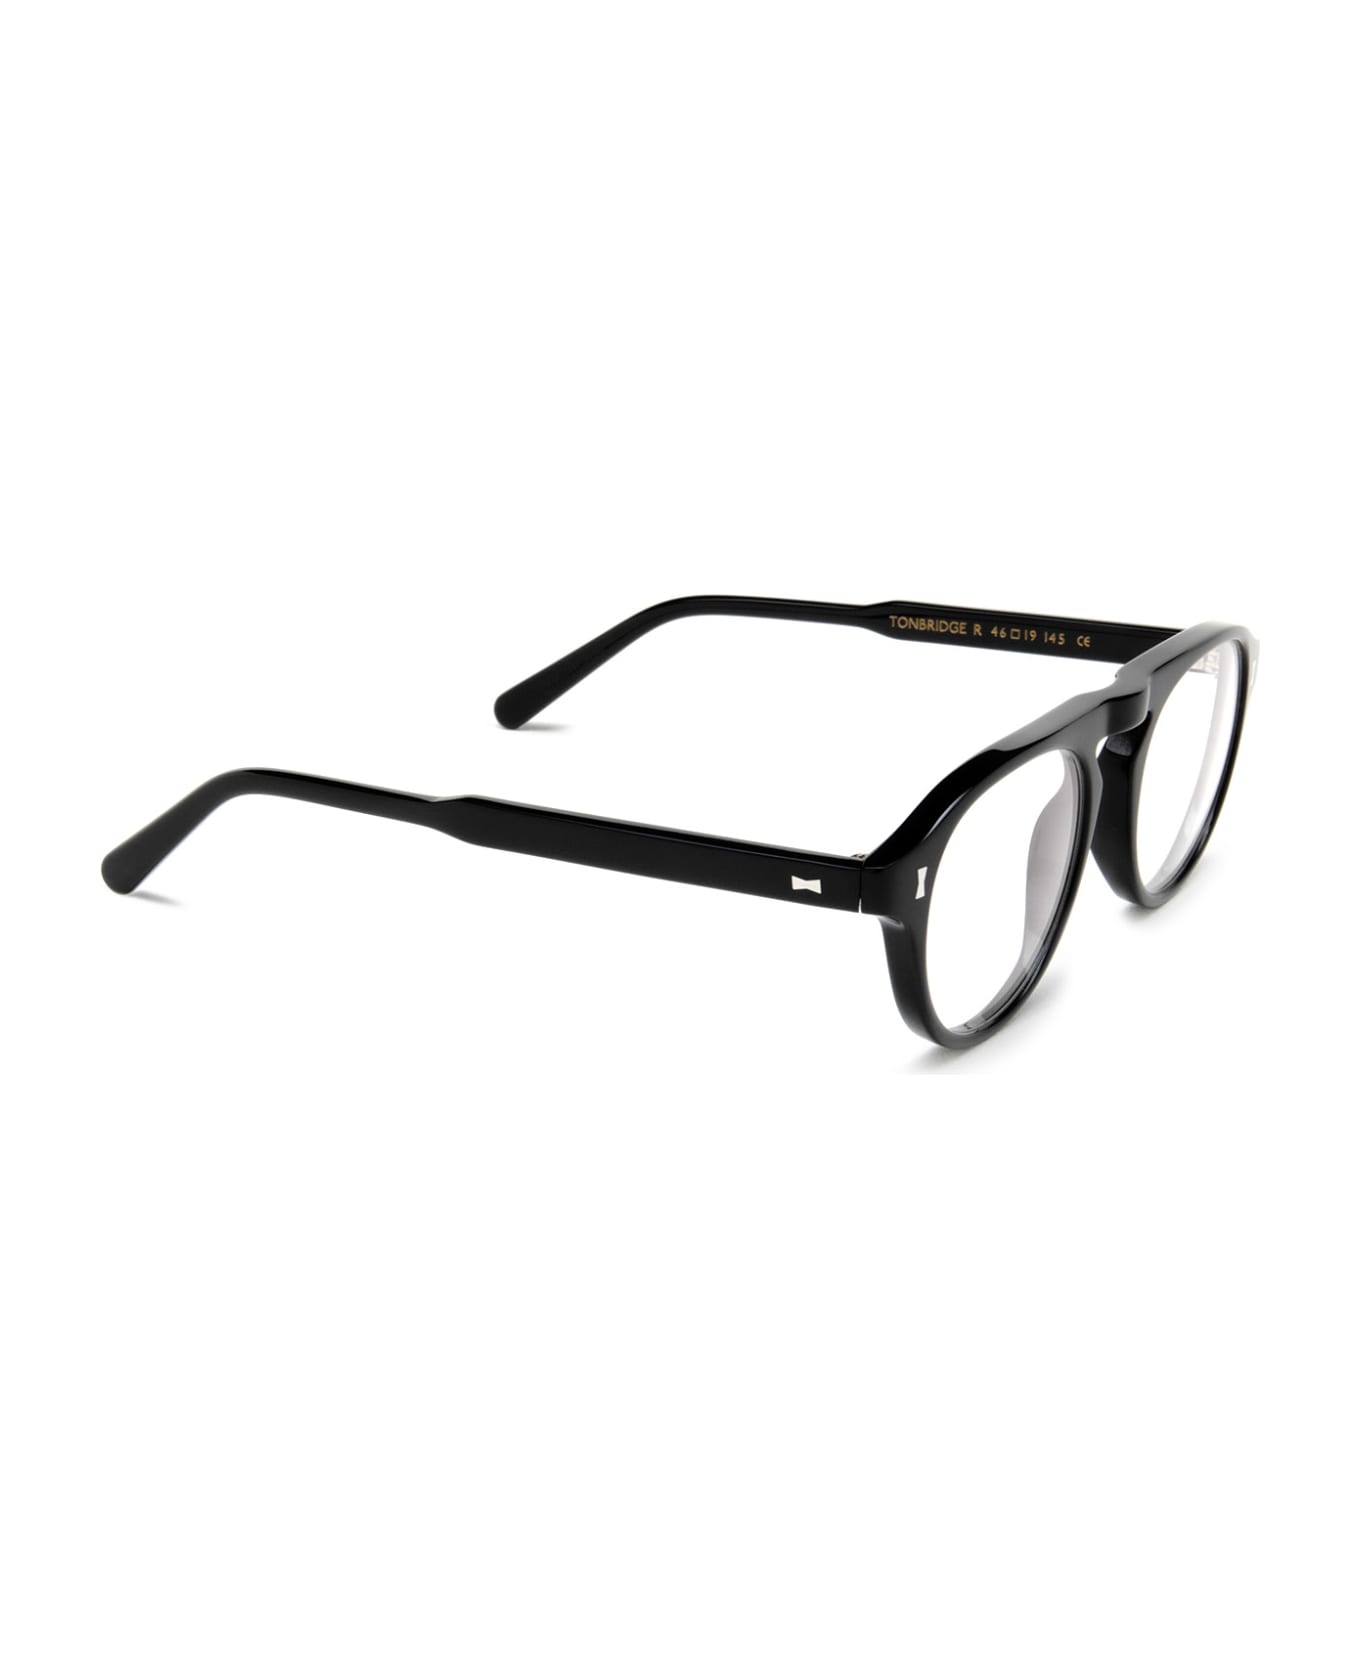 Cubitts Tonbridge Black Glasses - Black